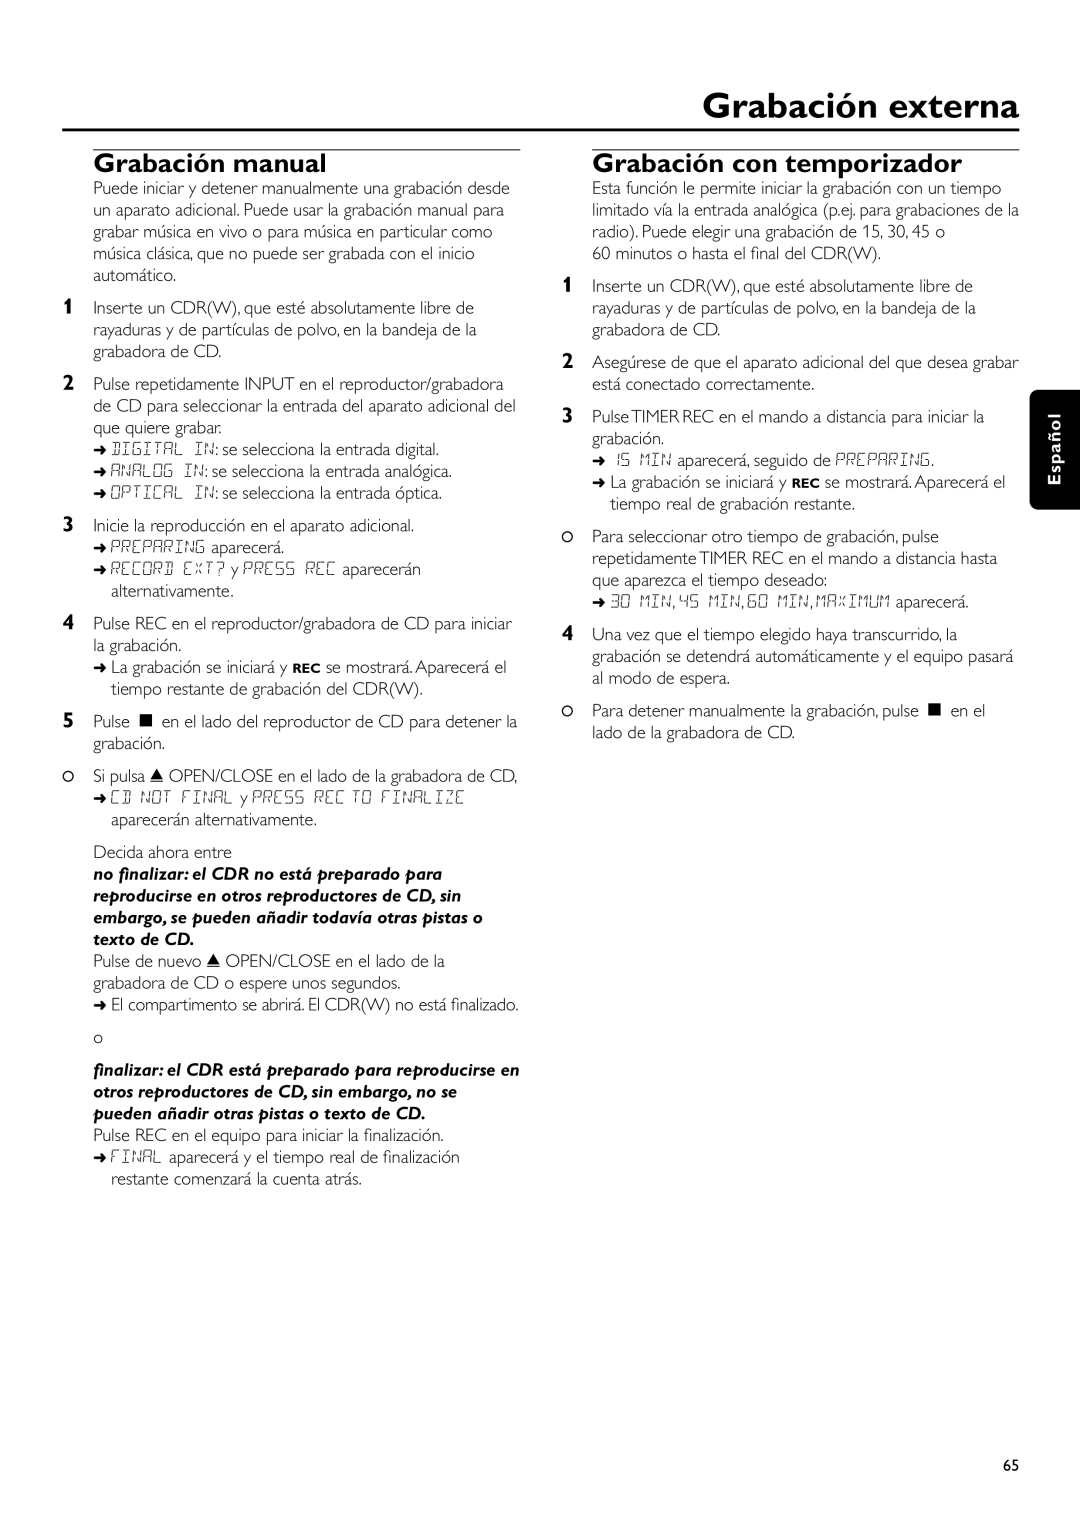 Philips CDR-795 Grabación manual, Grabación con temporizador, Grabación externa, Español 